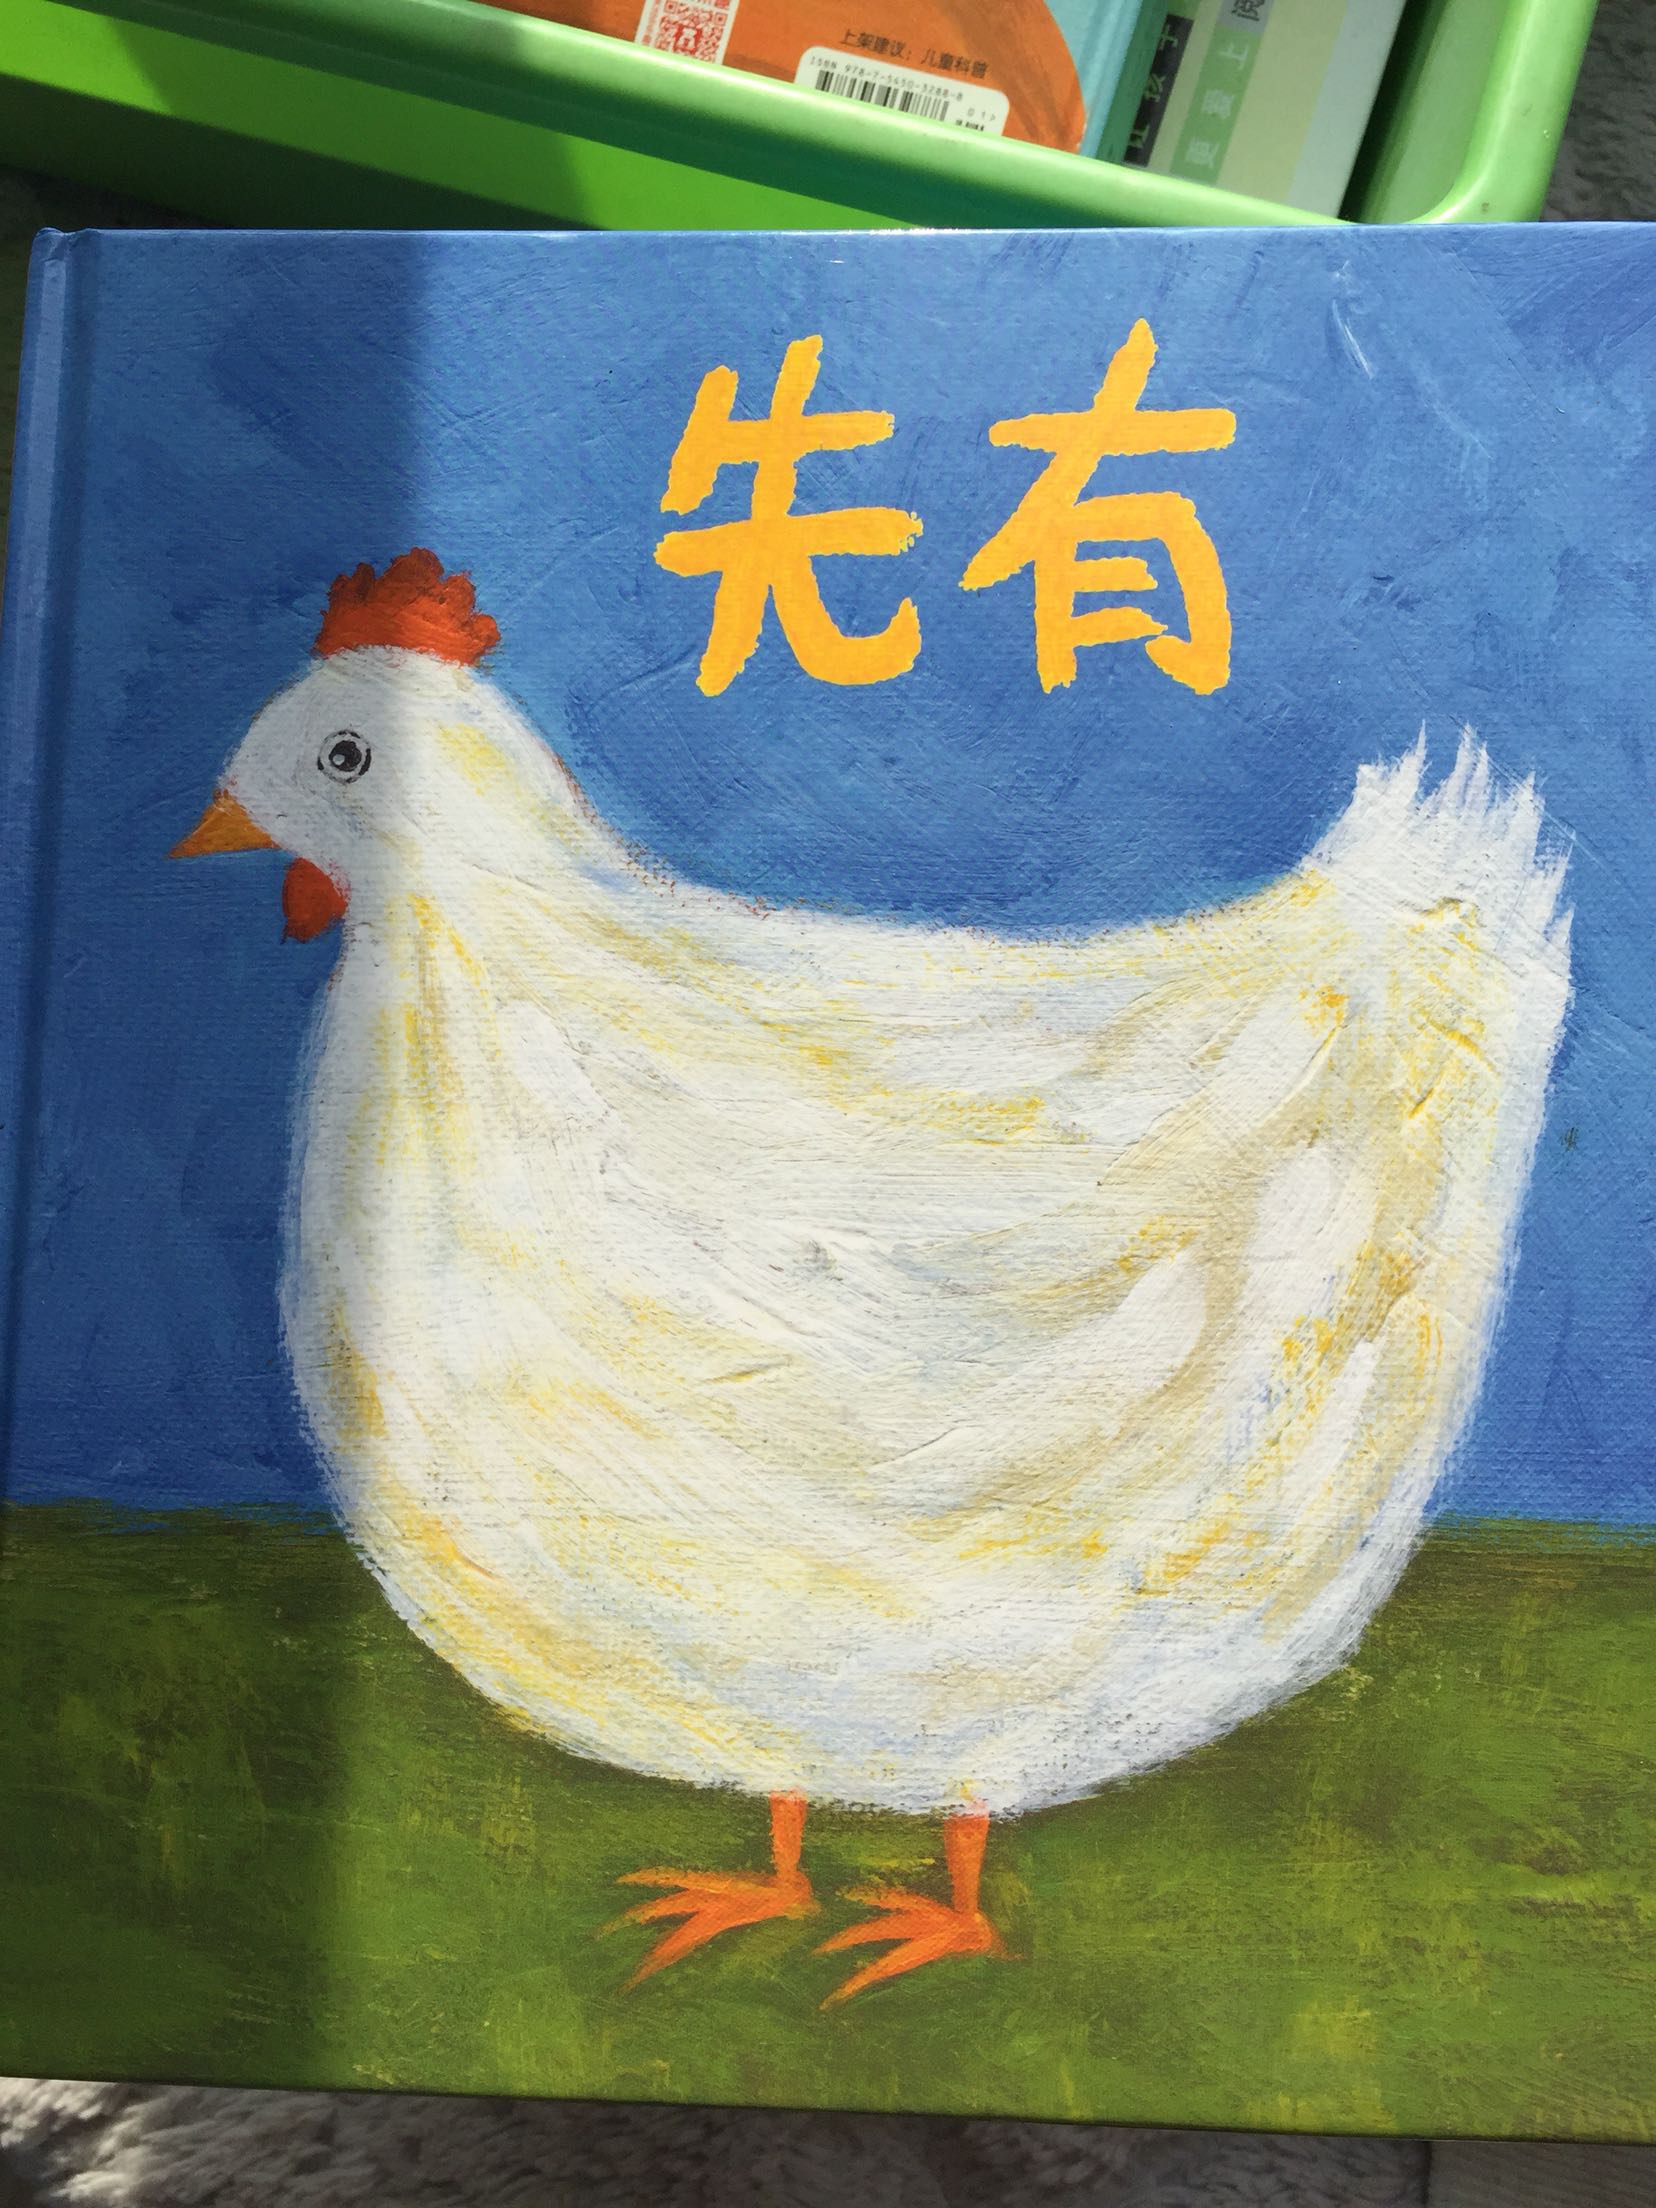 很好玩的一本书，先有鸡还是先有蛋。总算有答案了。